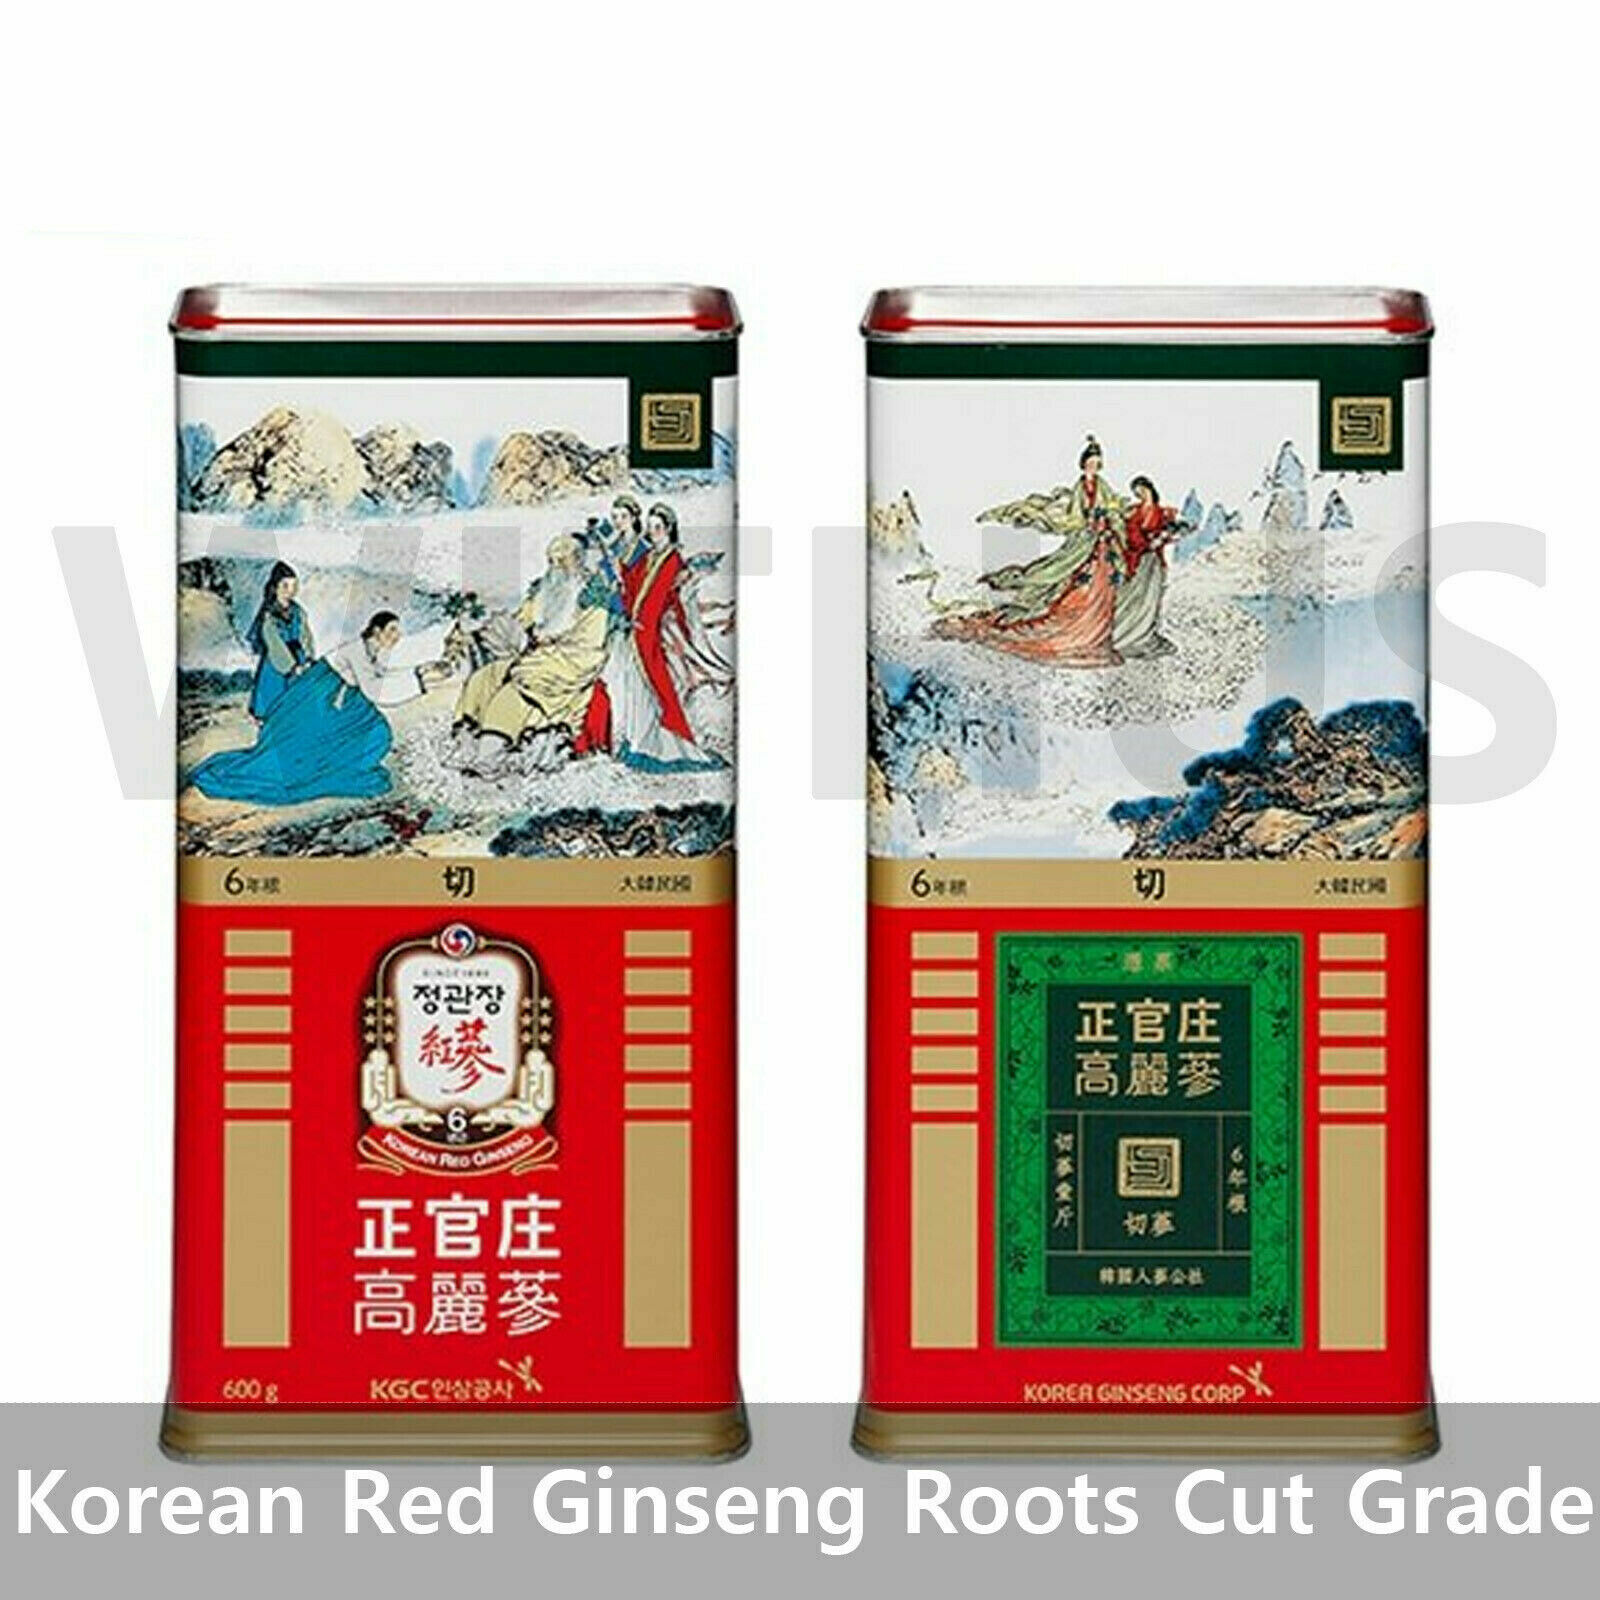 Cheong Kwan Jang Genuine Korean Red Ginseng Roots Cut Grade 600g